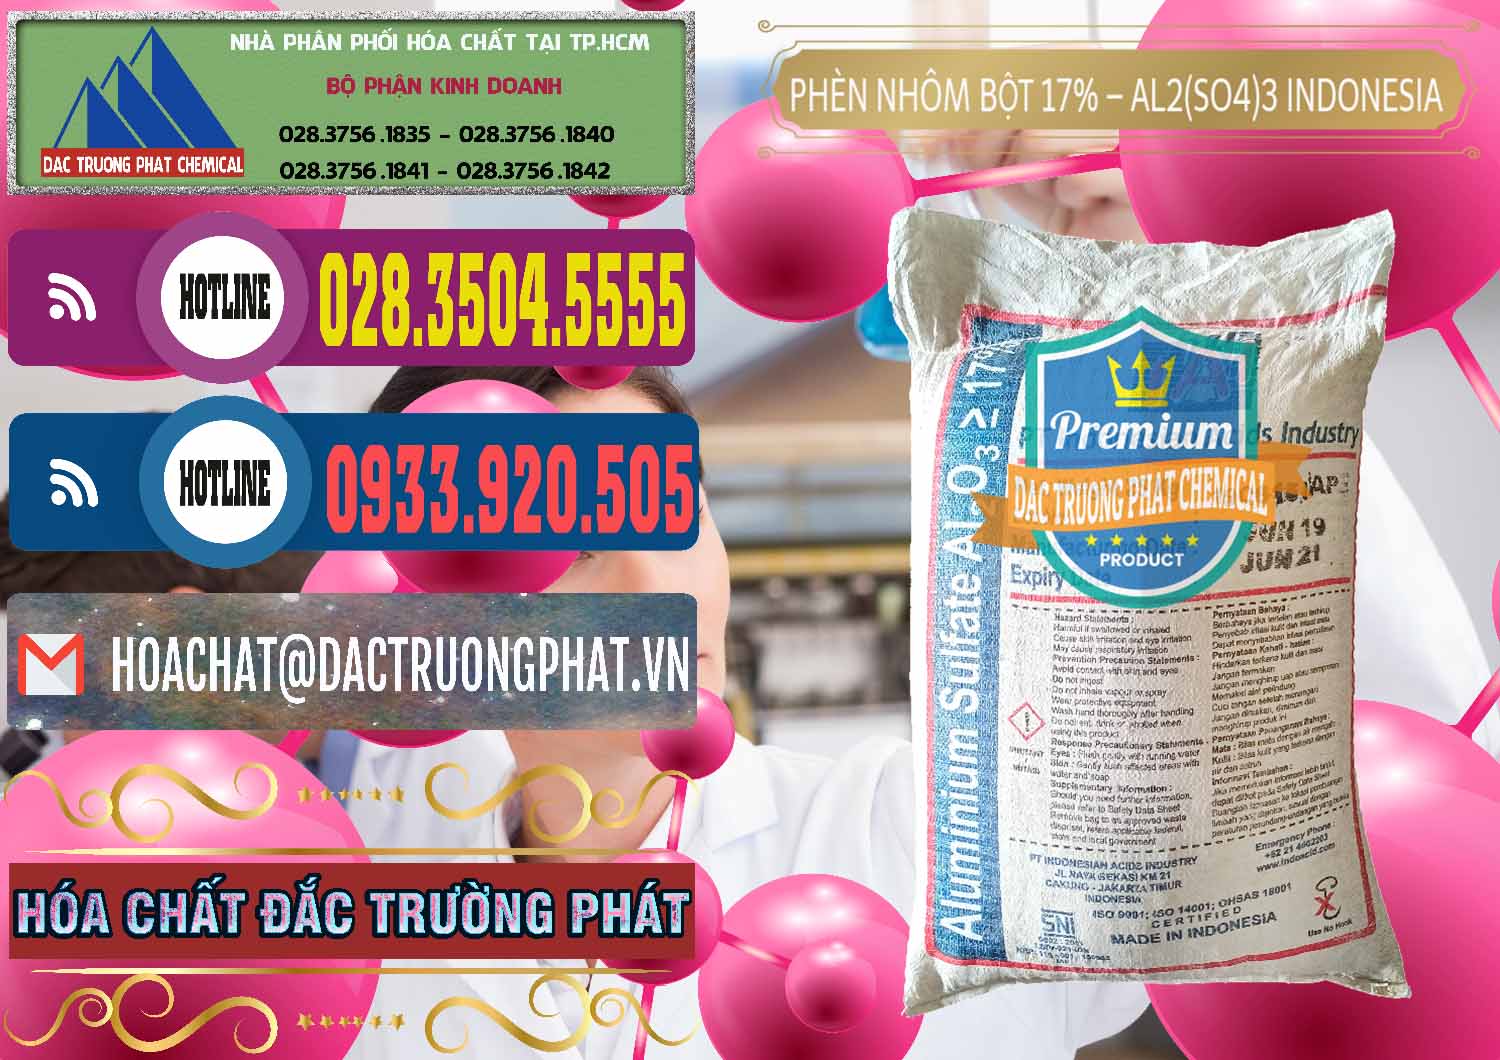 Bán - cung ứng Phèn Nhôm Bột - Al2(SO4)3 17% bao 25kg Indonesia - 0114 - Chuyên phân phối _ nhập khẩu hóa chất tại TP.HCM - muabanhoachat.com.vn